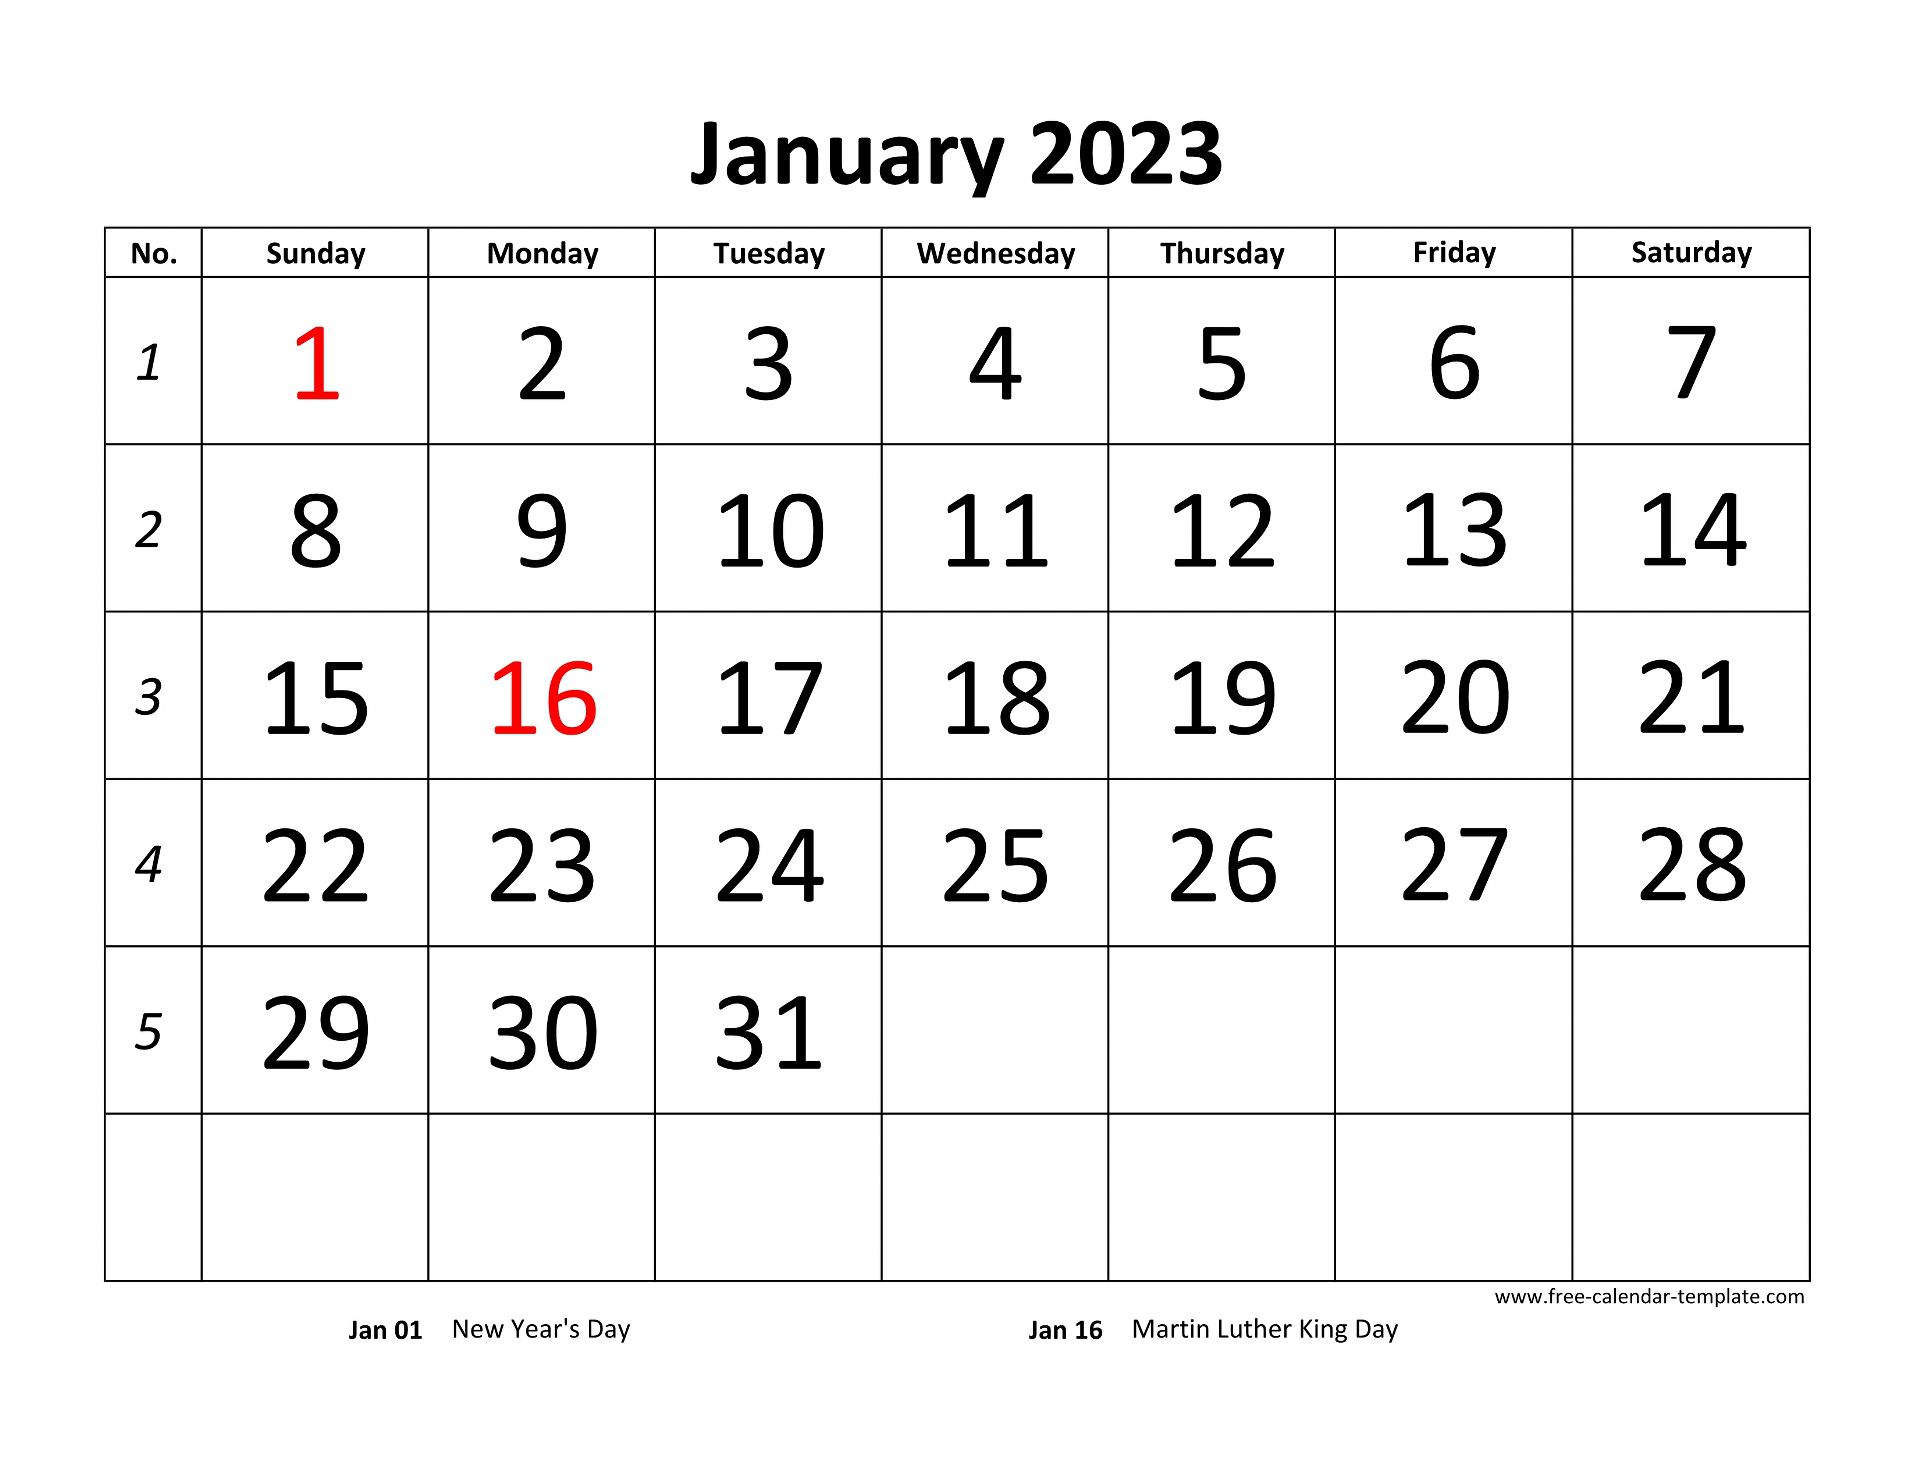 Printable Monthly Calendar 2023
| Free-Calendar-Template.com